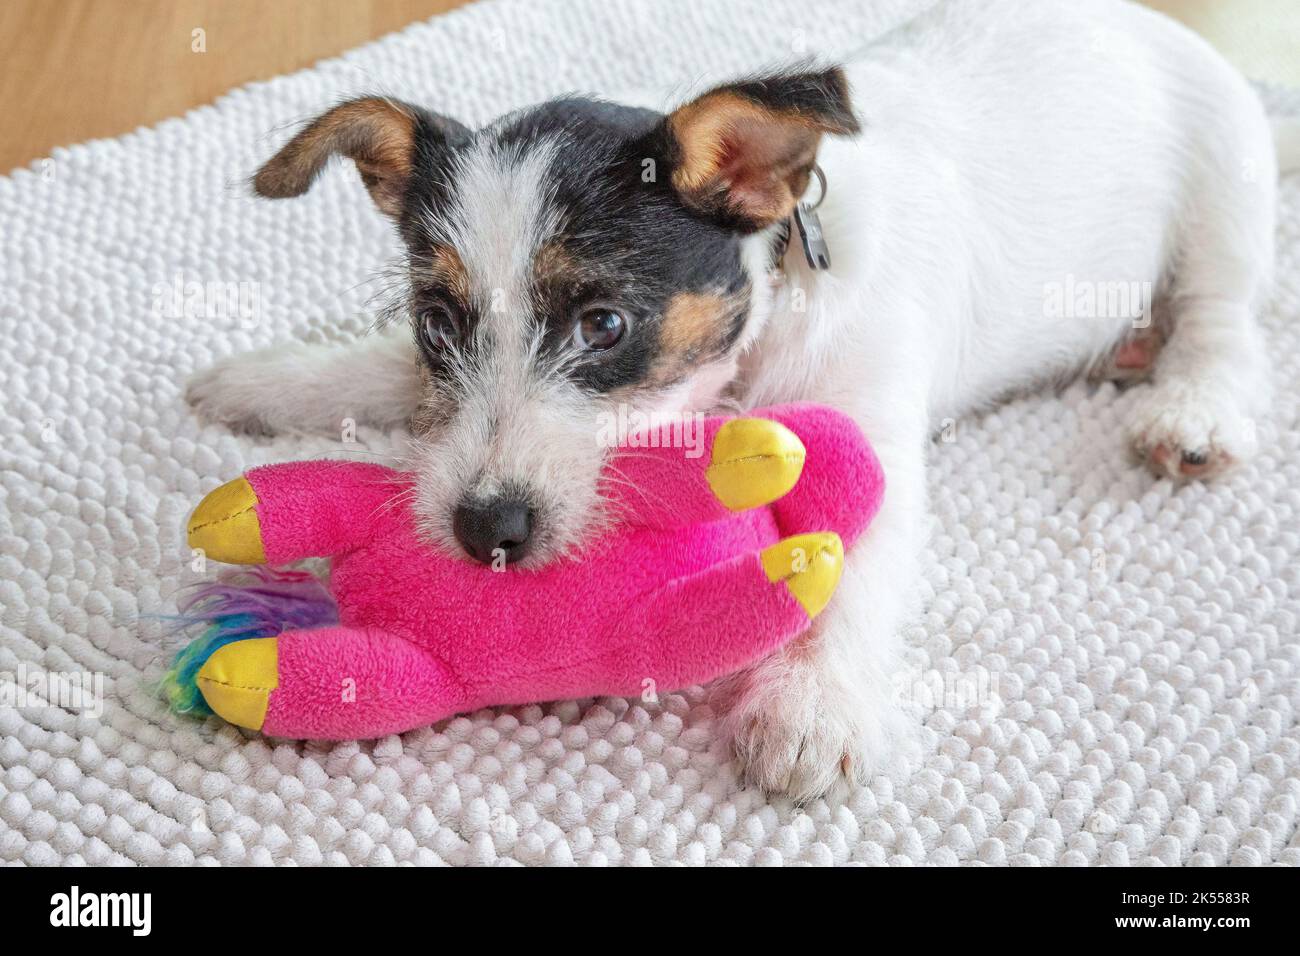 Trois mois Jack Russell chiot chien jouant avec un jouet rose bourré Banque D'Images